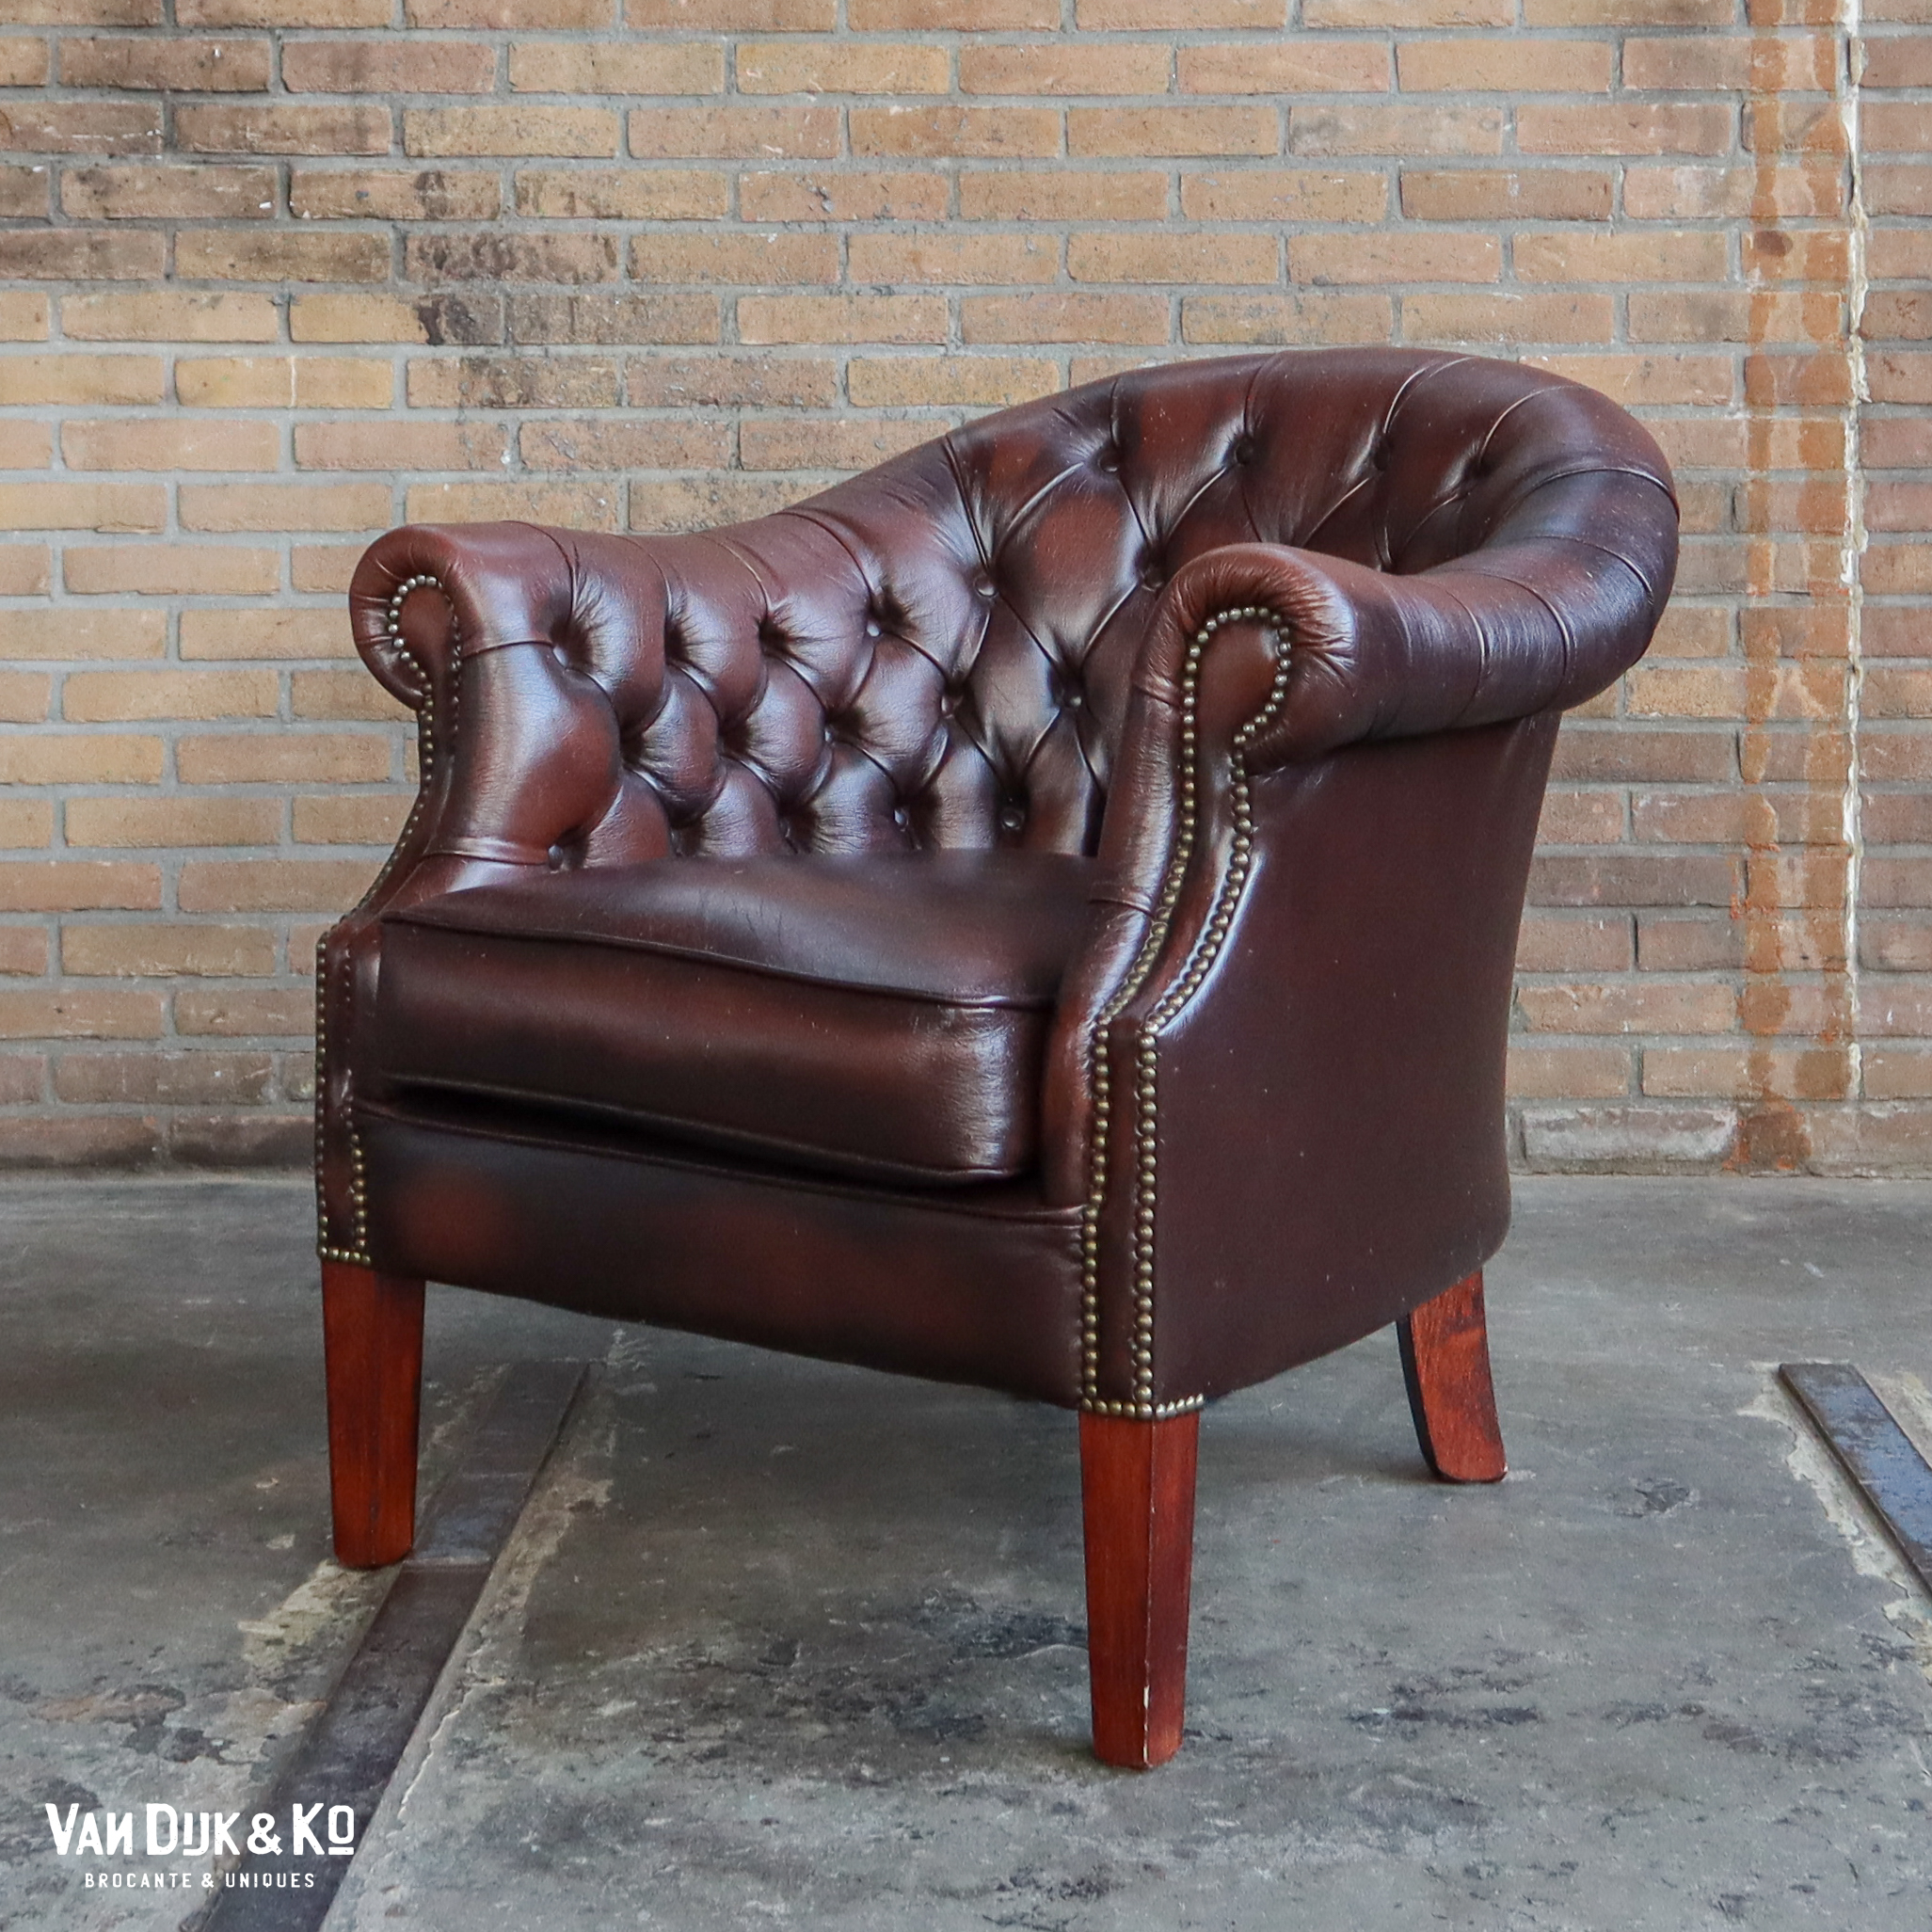 Strippen regio baard Leren vintage fauteuil » Van Dijk & Ko